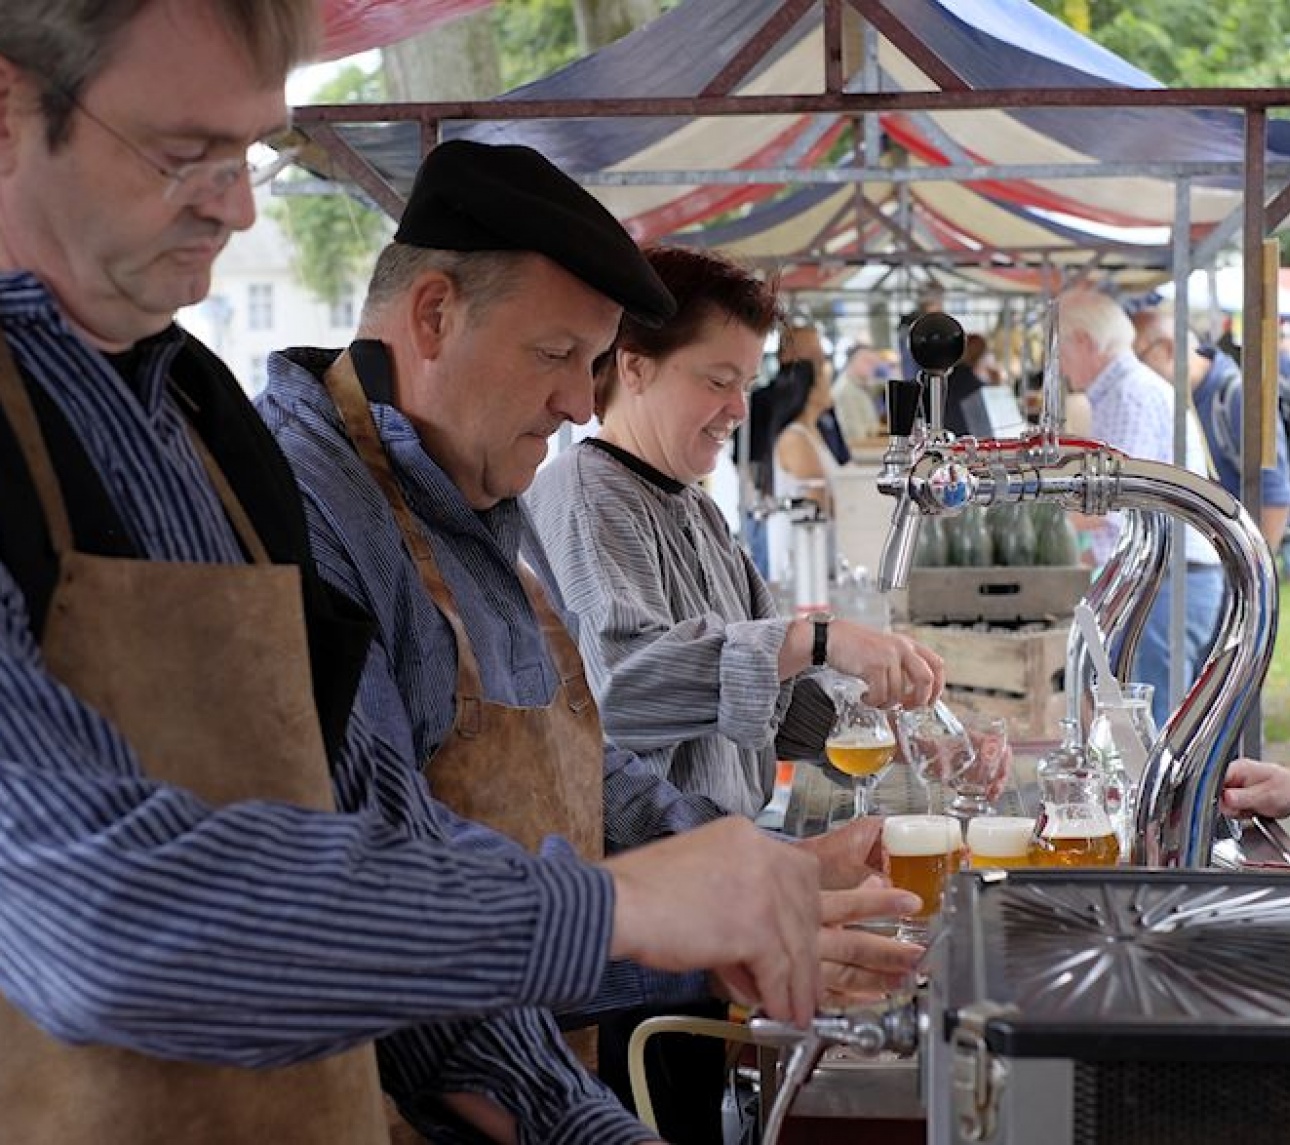 Bierfestival PRoost